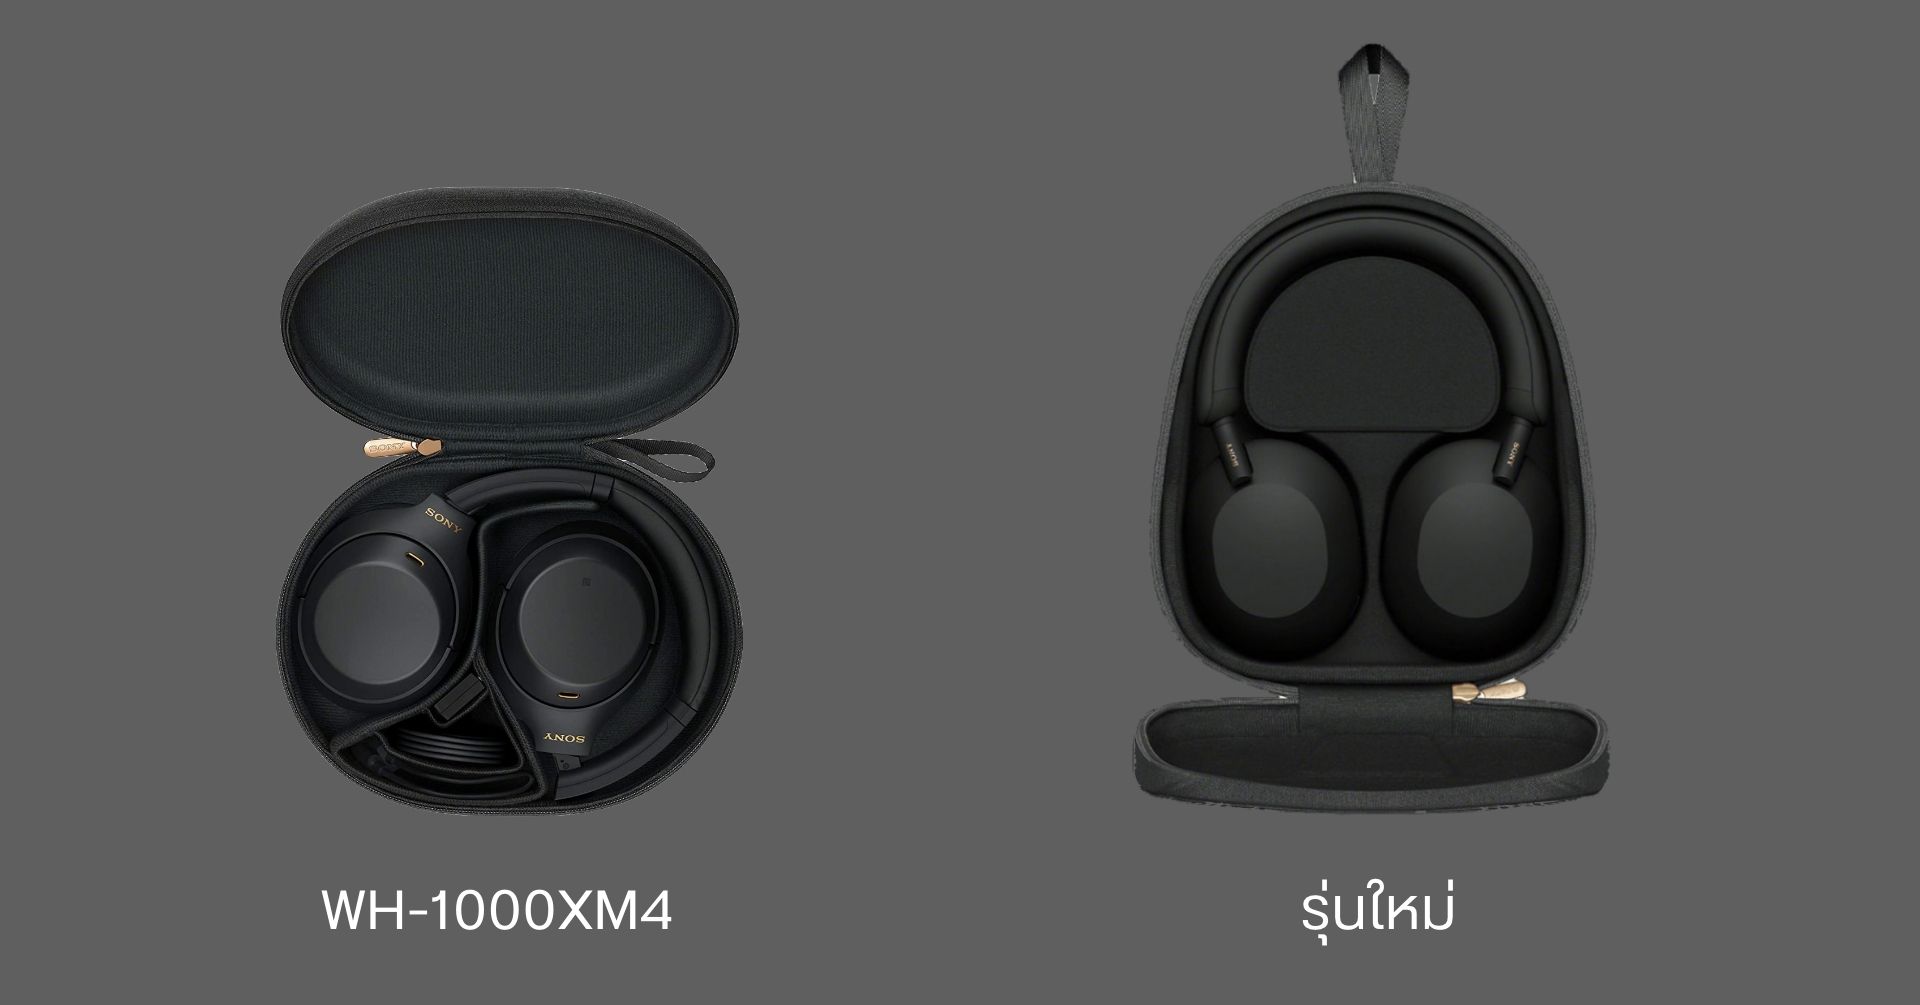 เปิดตัวหูฟังไร้สายเรือธง Sony WH-1000XM5 มาพร้อมดีไซน์ใหม่ และระบบตัดเสียงรบกวนเยี่ยมกว่าเดิม